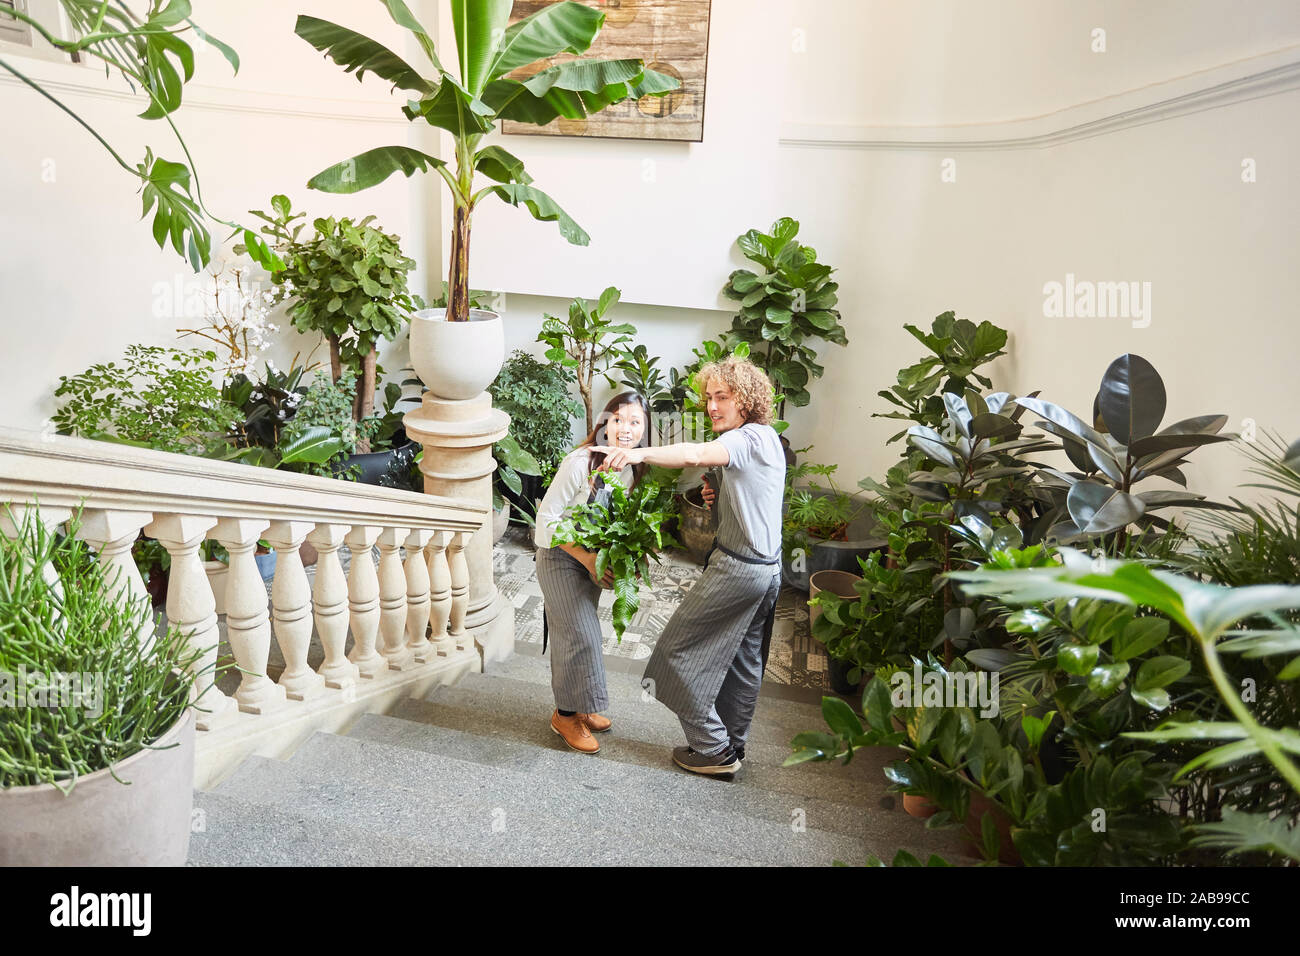 Due i fioristi di fiorai evento presso il catering per nozze con molte piante verdi Foto Stock